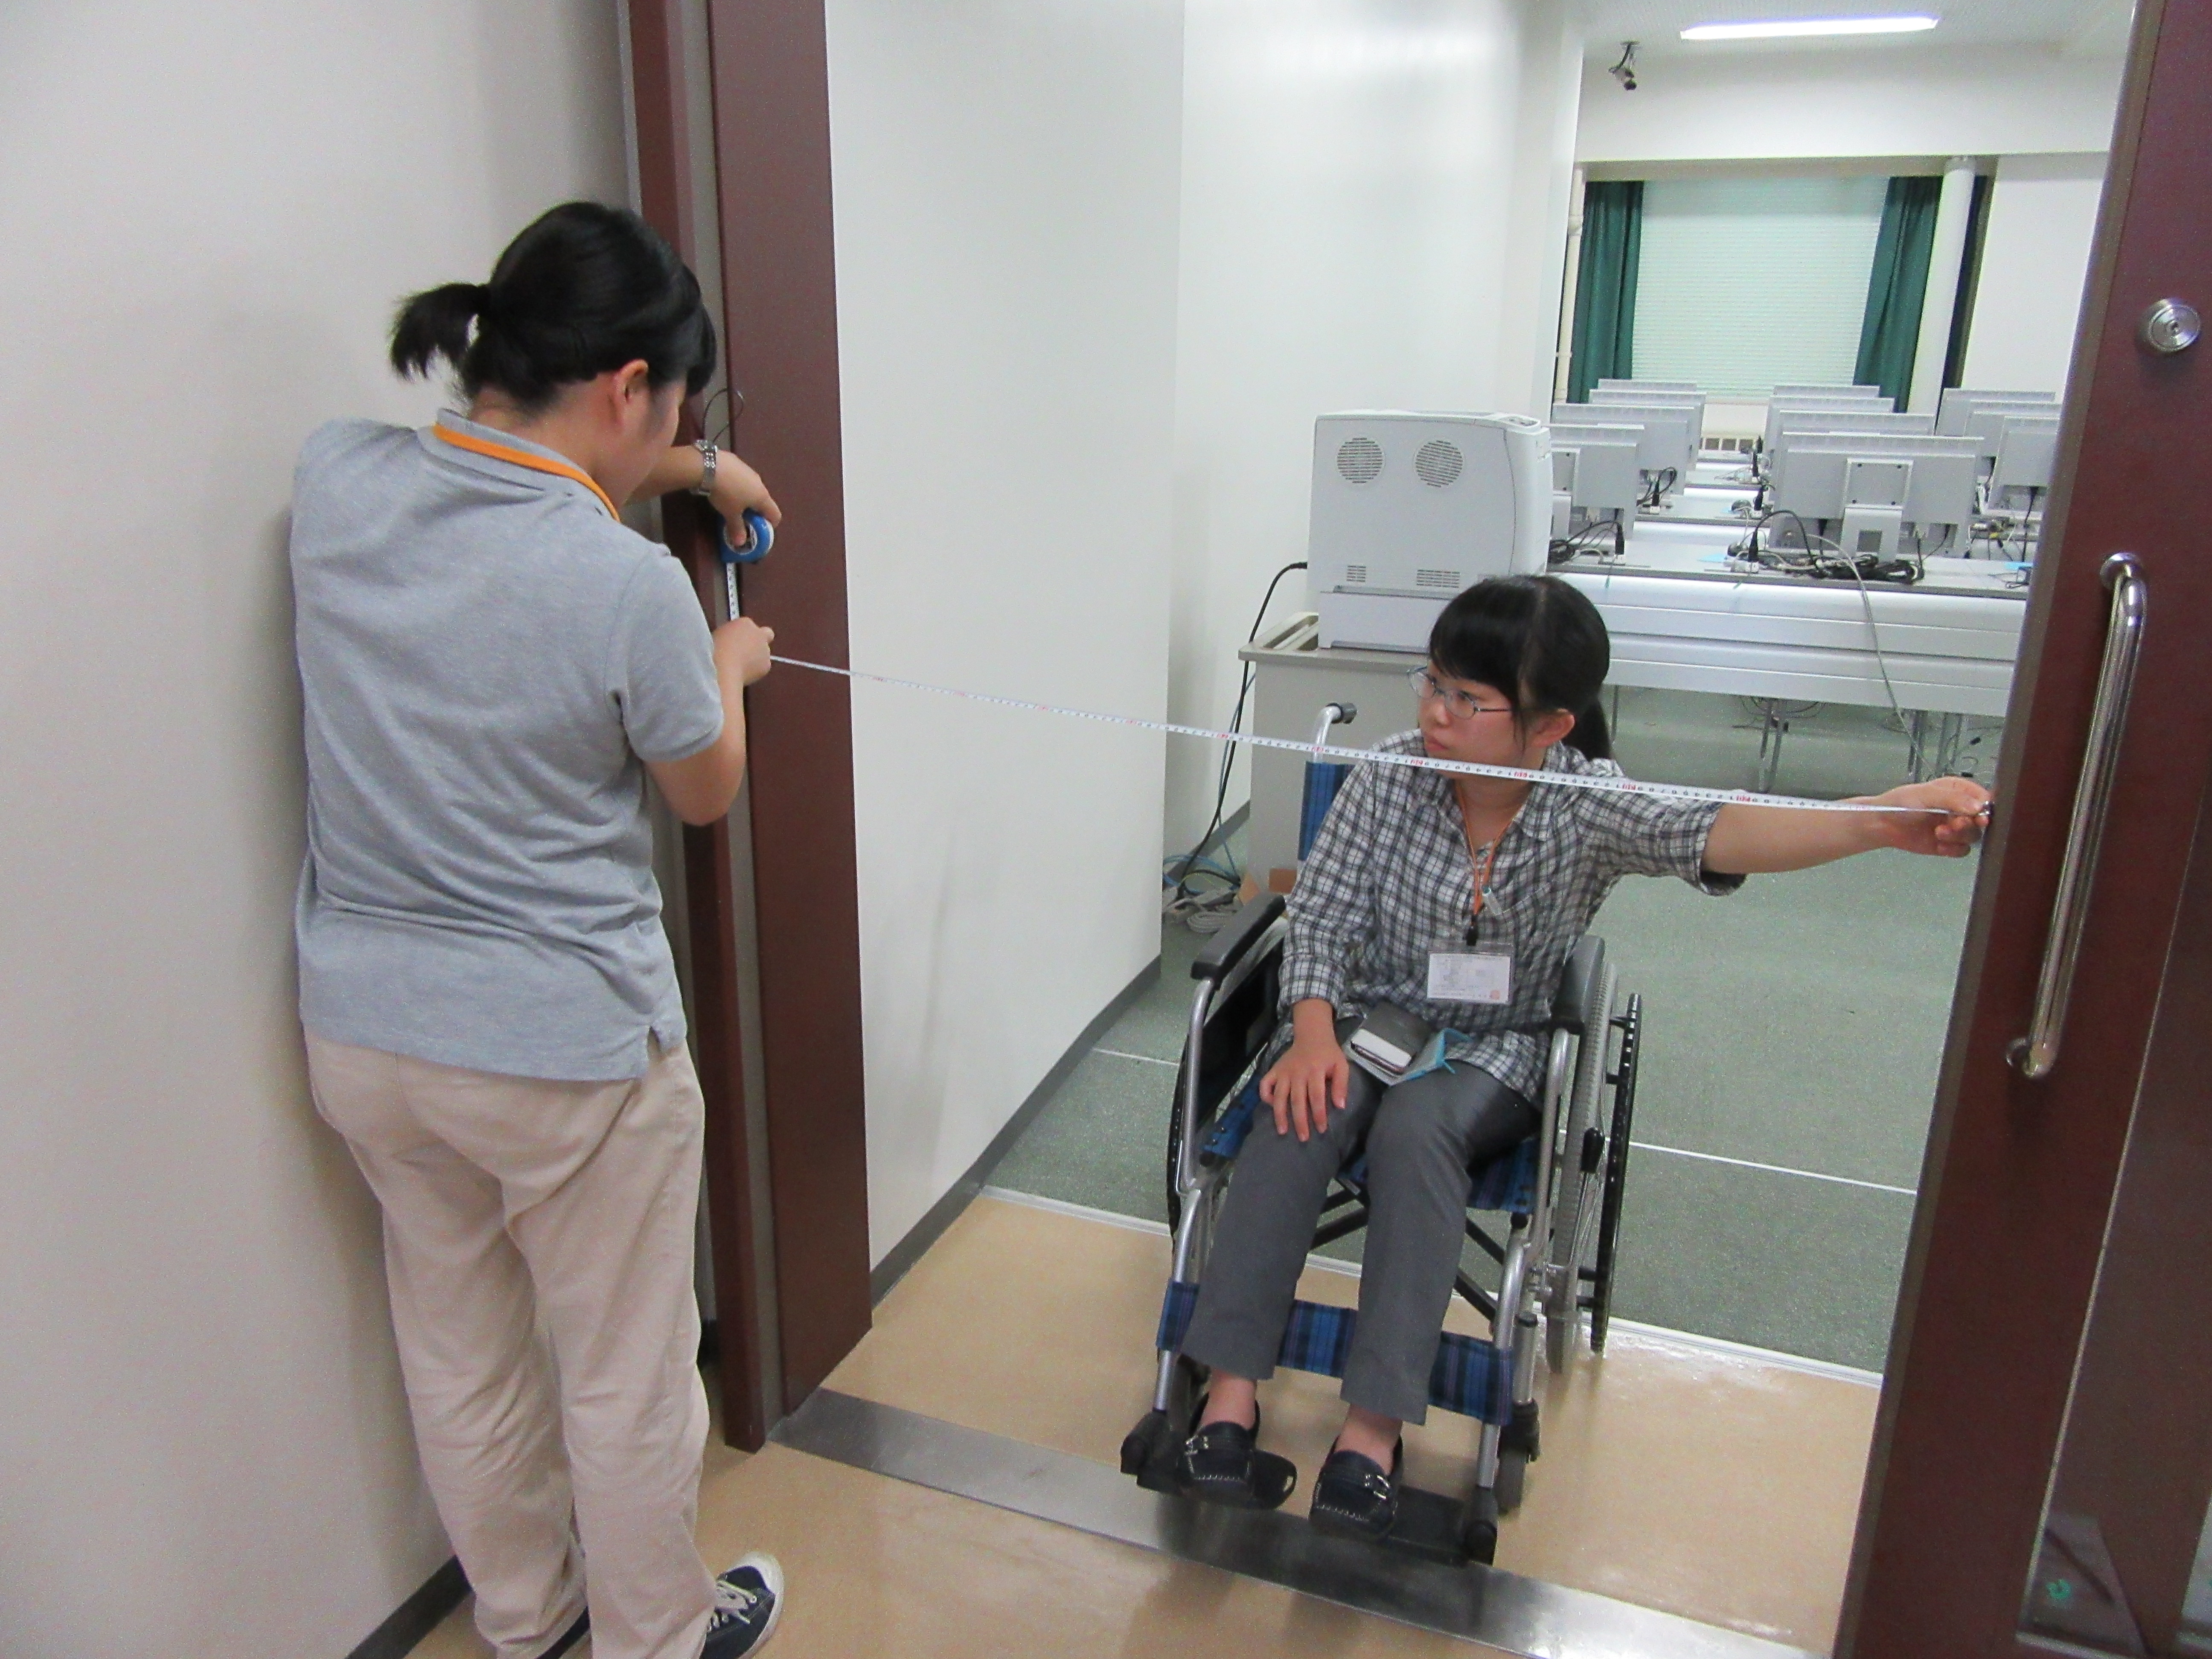 支援学生が車いすに乗り、もう1人とドアの長さを測っている